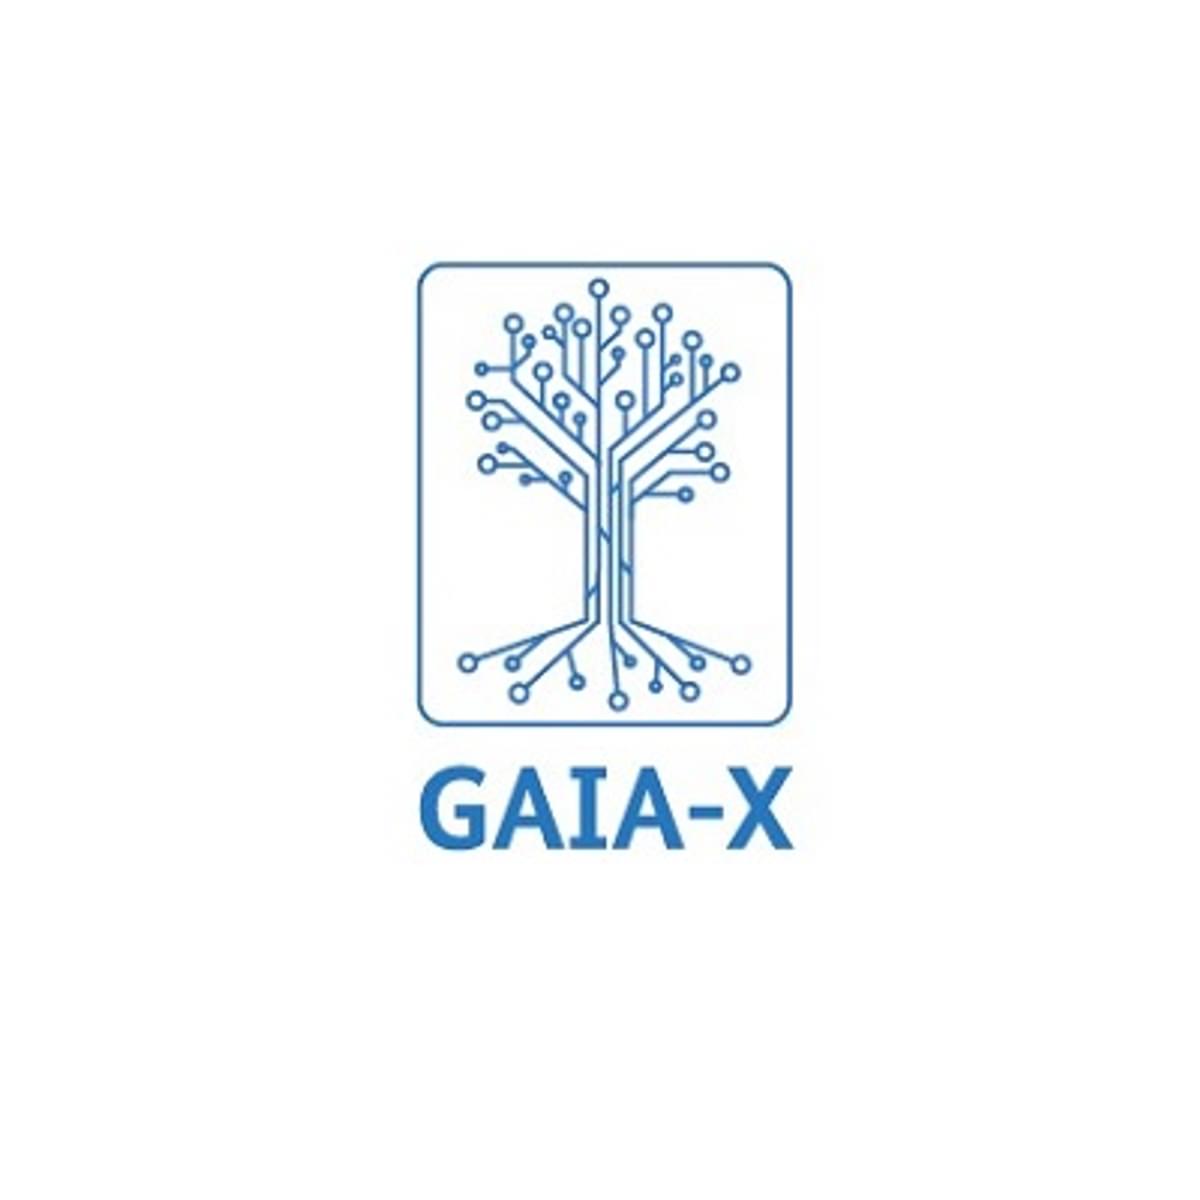 Salesforce doet mee aan Cloud Project GAIA-X in Europa image